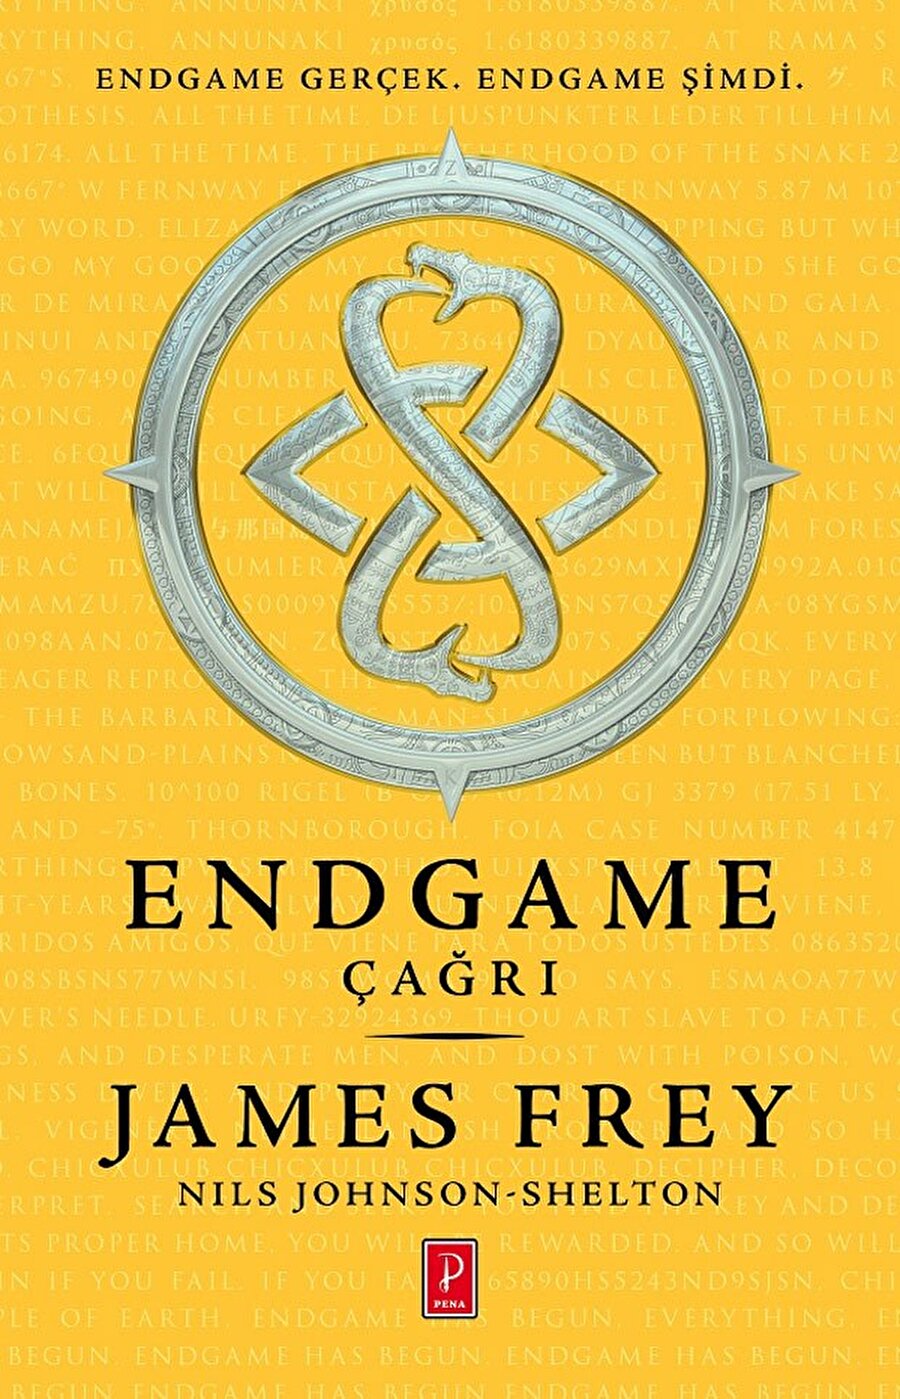 Endgame Serisi

                                    
                                    1.Endgame: Çağrı
2. Endgame: Gök Anahtarı

 Serinin son kitabı tüm dünyada 27 Aralık günü yayımlanacak.

Yazarlar: Nils Johnson Shelton, James Frey

  

                                
                                